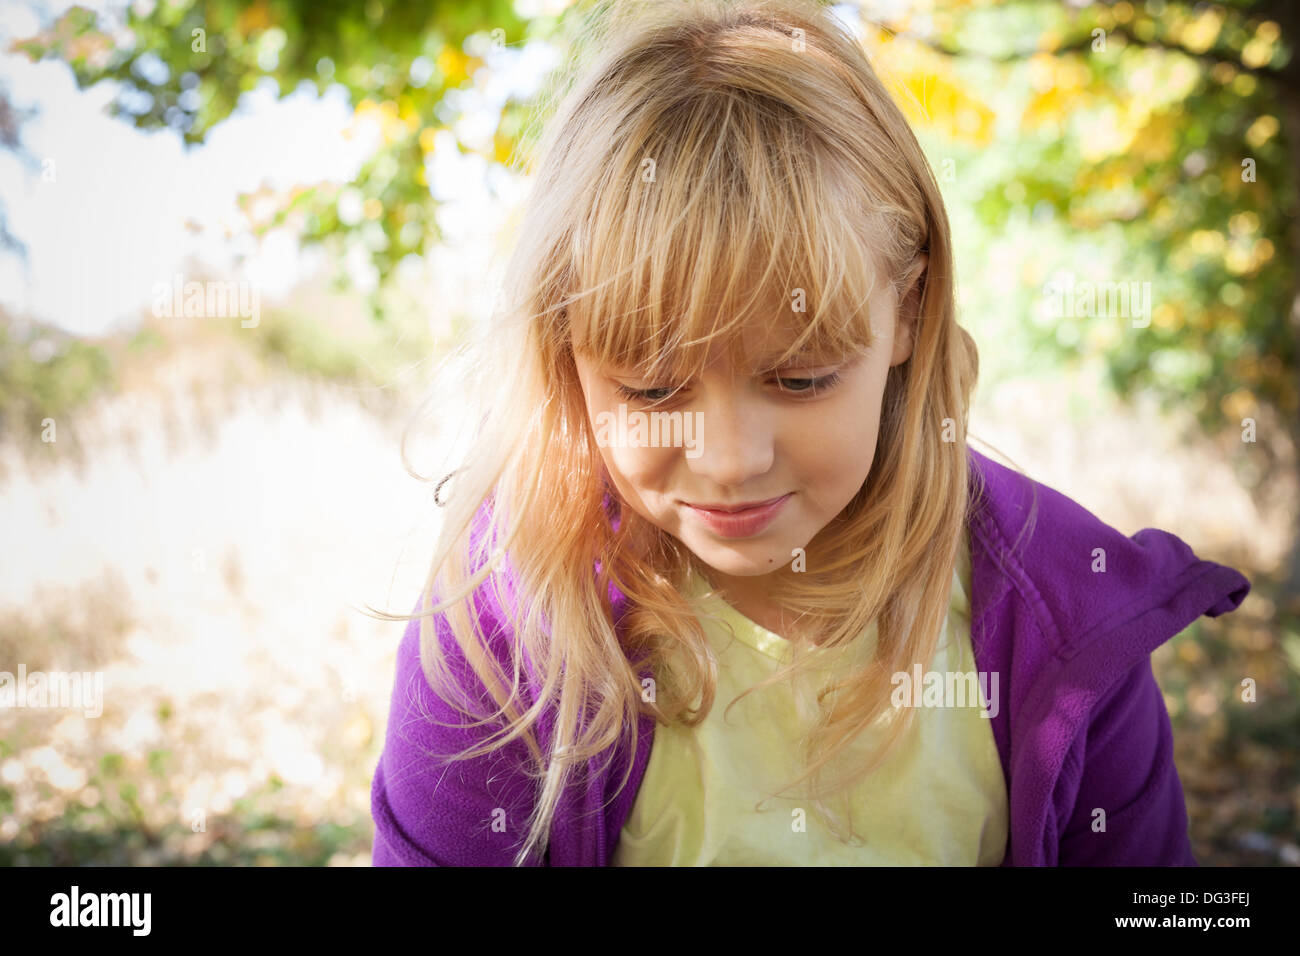 Porträt des kleinen Lächelns blonde Mädchen im Herbst park Stockfoto